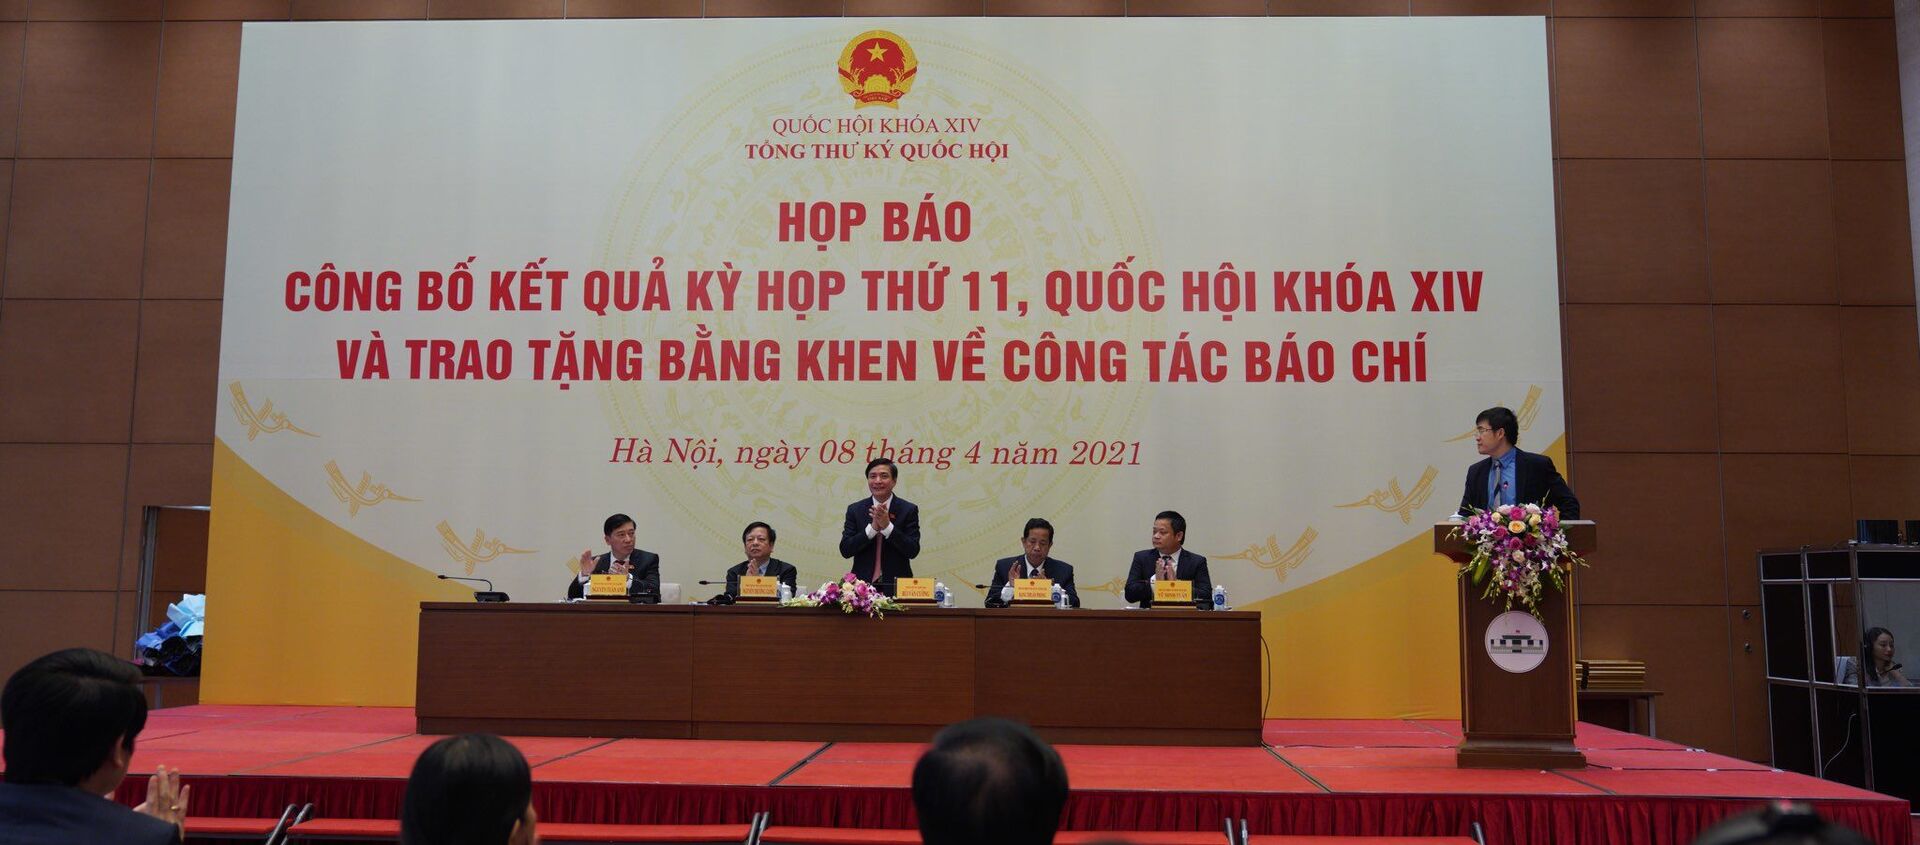 Họp báo công bố kết quả kỳ họp 11, Quốc hội khóa XIV - Sputnik Việt Nam, 1920, 08.04.2021